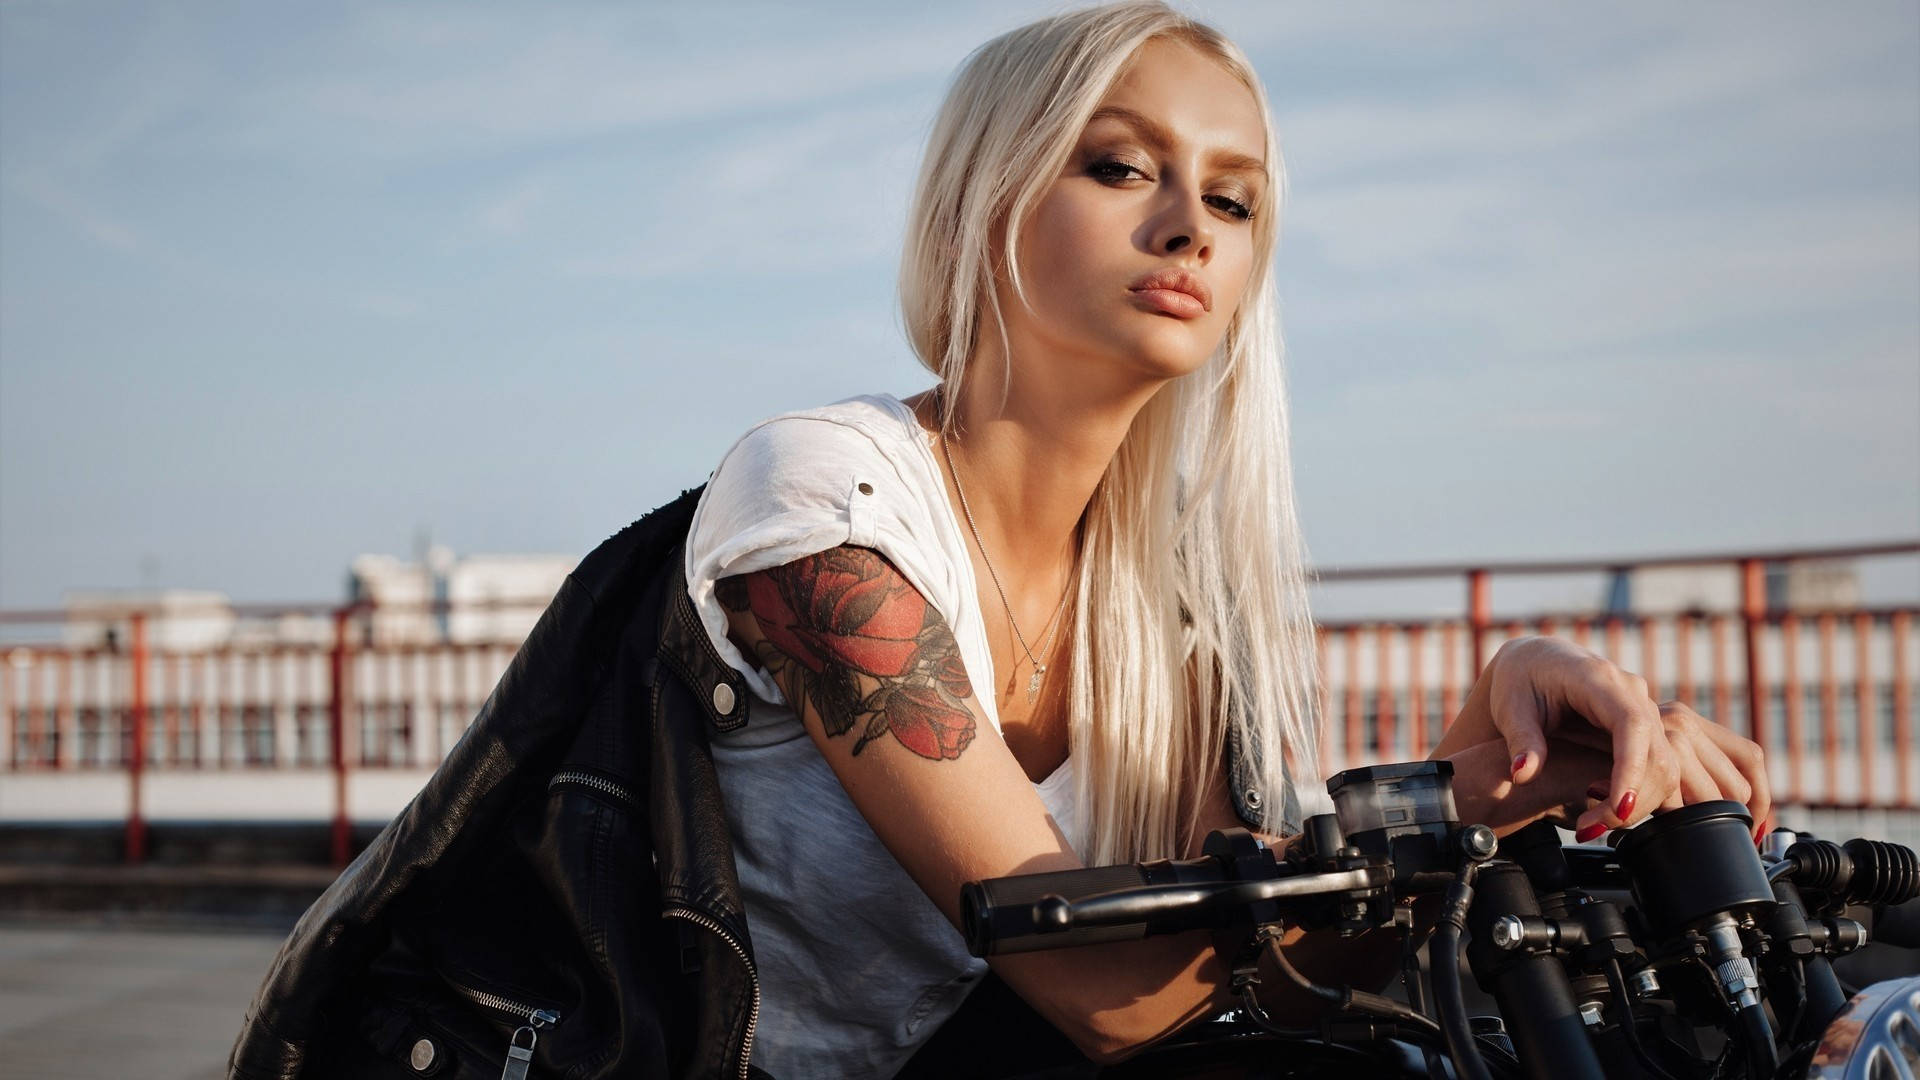 Bad Motorcycle Girl Background